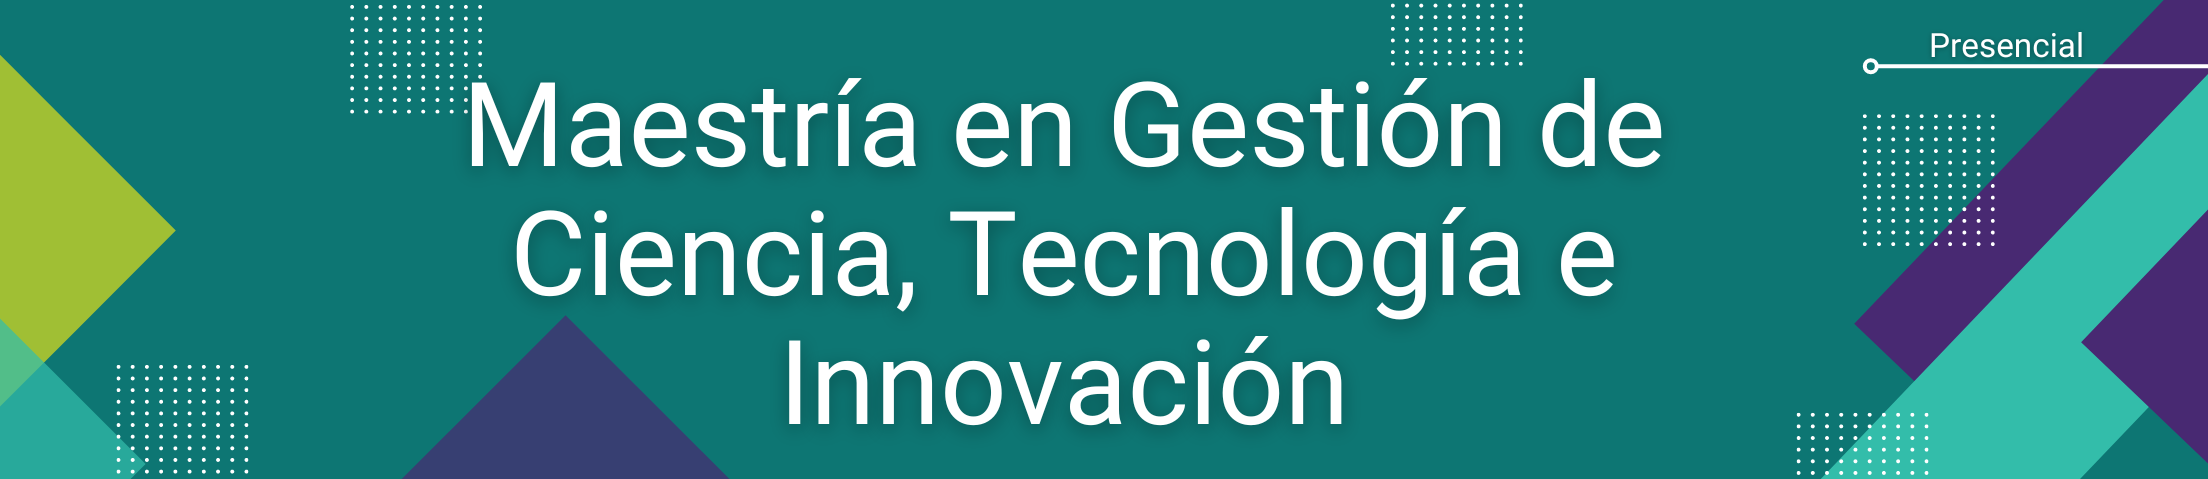 Banner inicial del programa de Maestría en Gestión de Ciencia, Tecnología e Innovación. Modalidad Presencial.